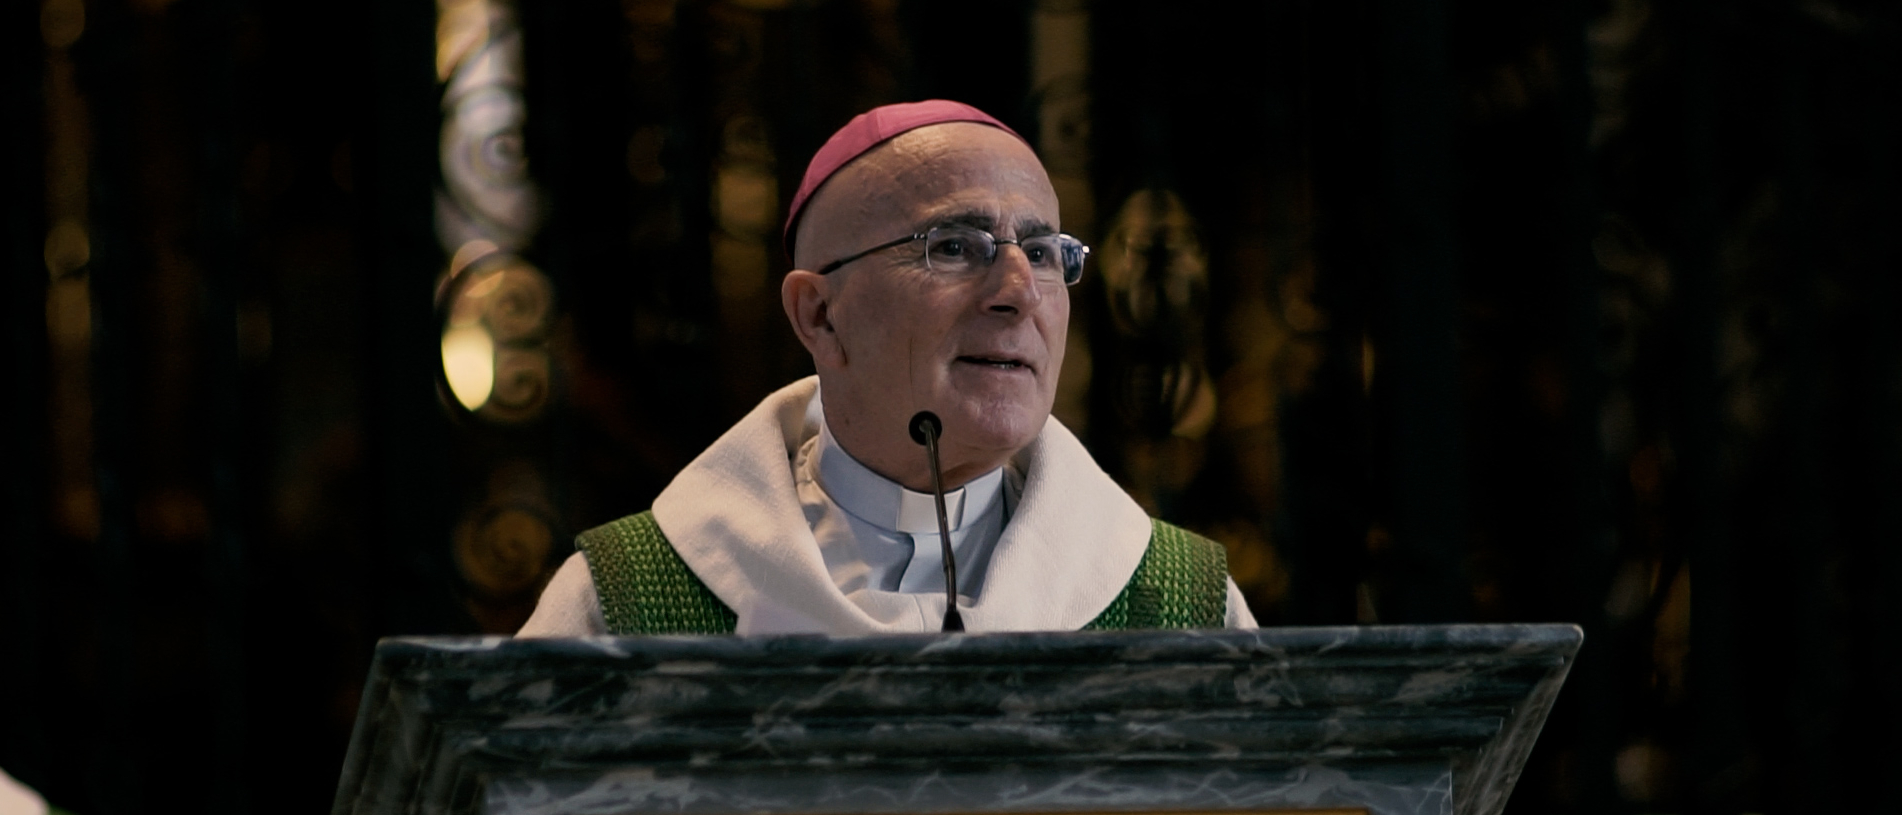 Pour Mgr Joseph Bonnemain, évêque de Coire, la liturgie ne doit pas être le lieu d'expérimentations personnelles | DR